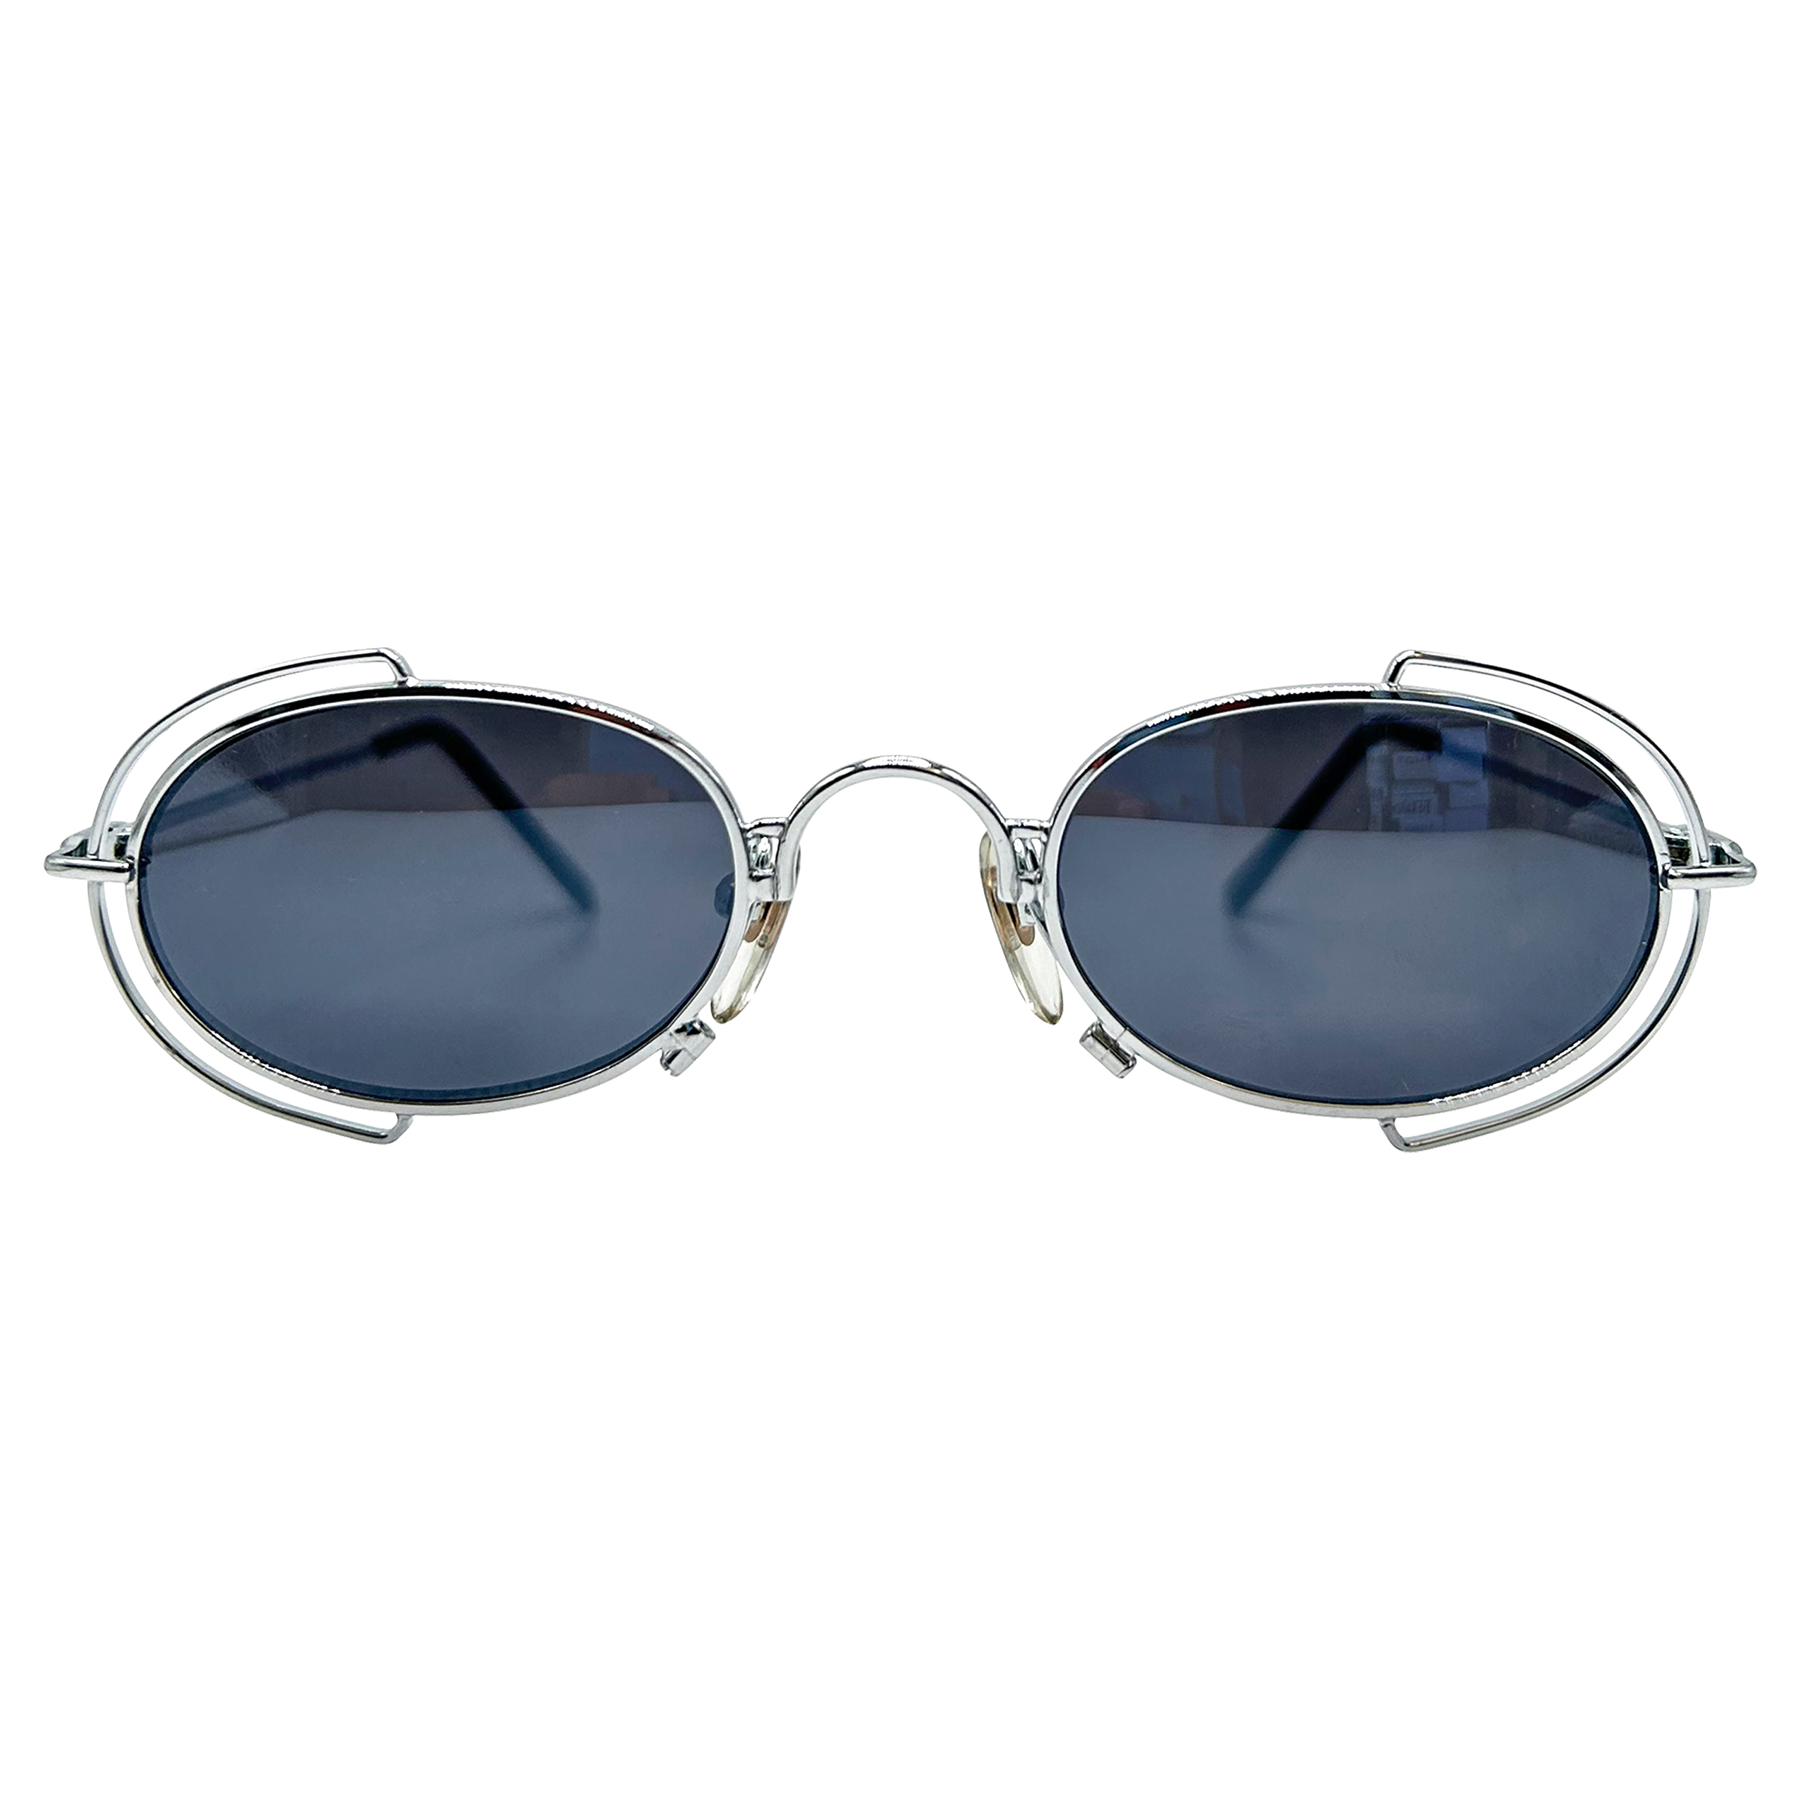 COTE Silver 90s Oval Sunglasses